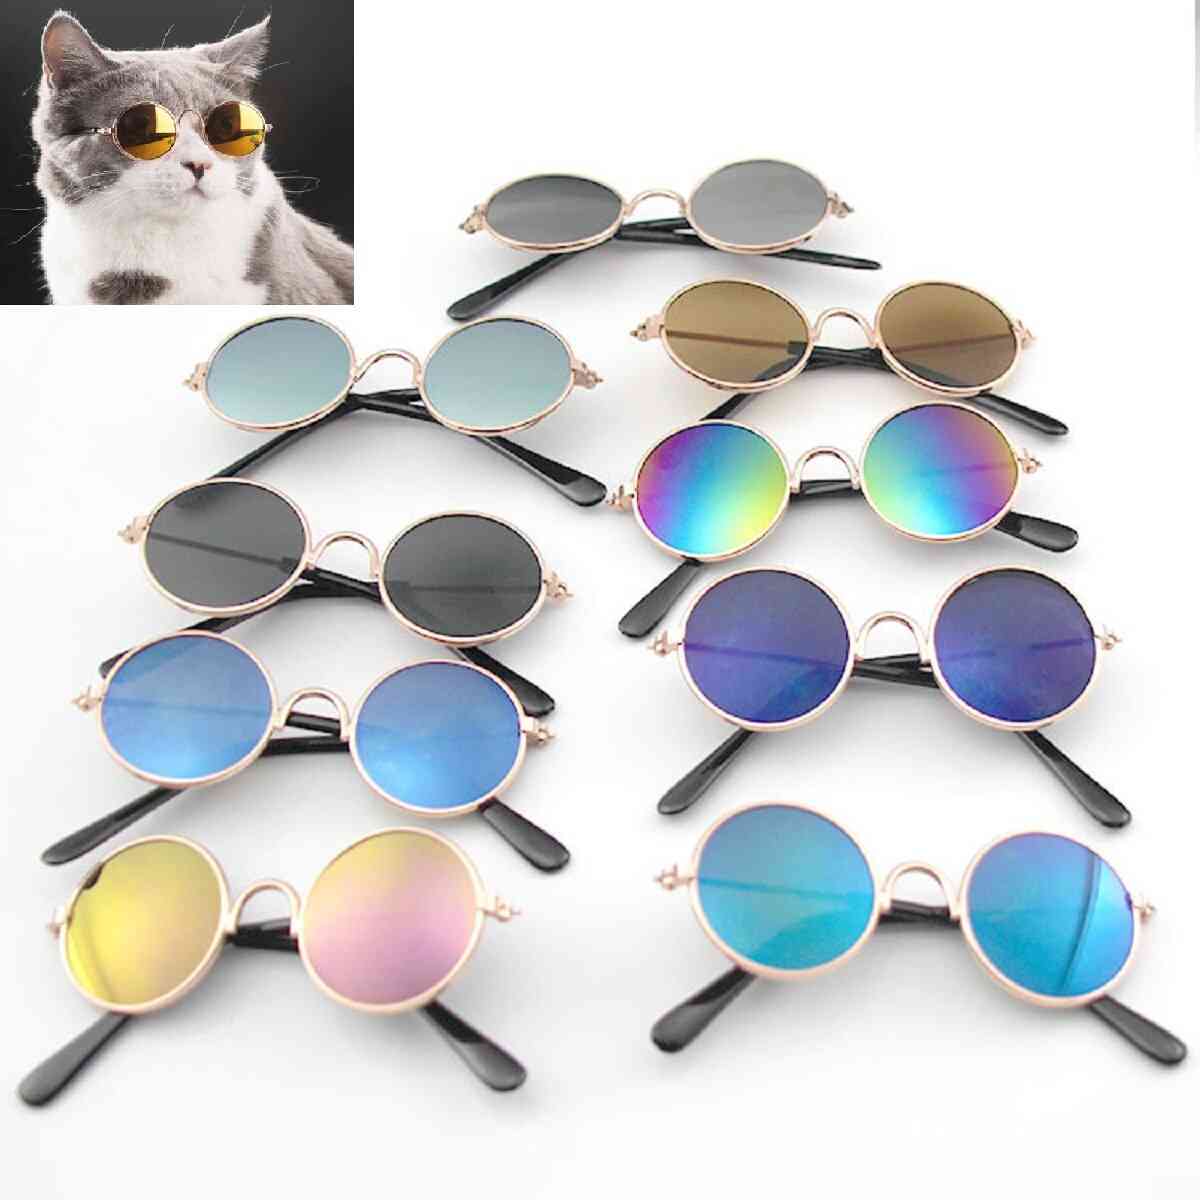 Round Cat Sunglasses